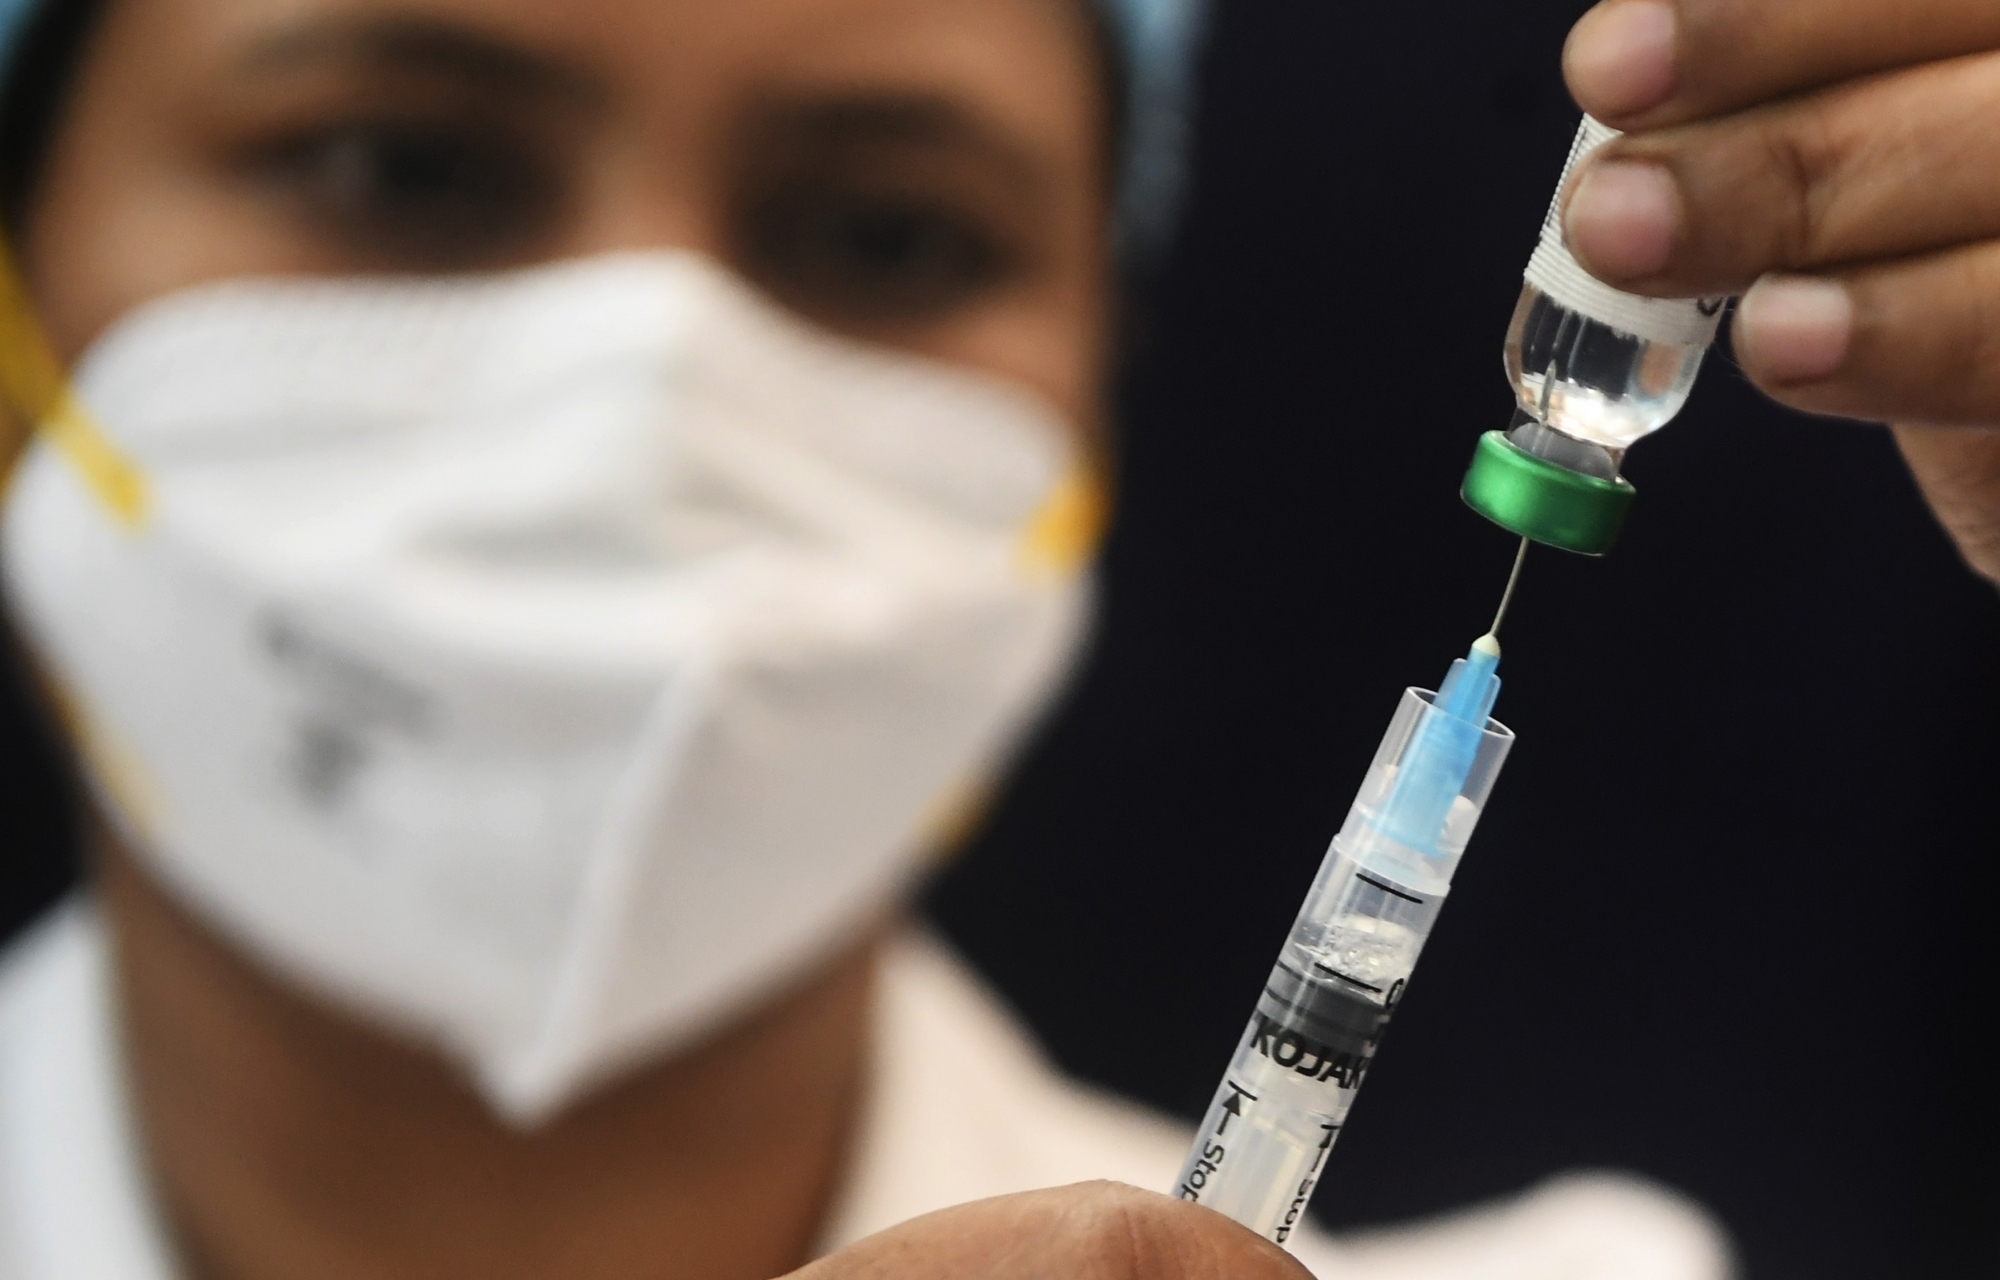 झारखंड के स्वास्थ्य मंत्री कोविड वैक्सीन की पहली खुराक लेंग